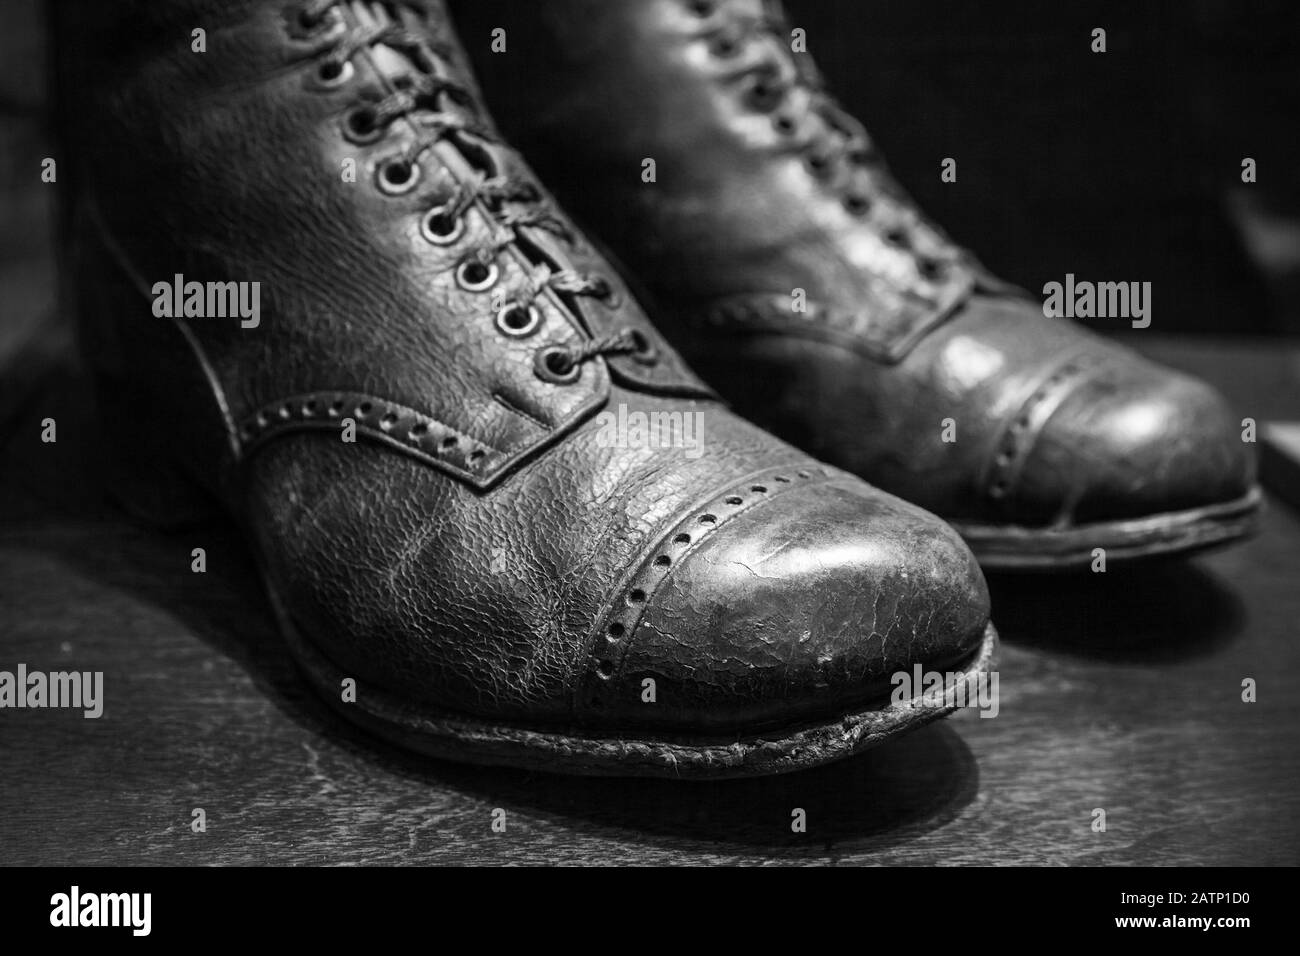 Anciennes chaussures en cuir véritable, gros plan avec mise au point sélective. Noir et blanc Banque D'Images